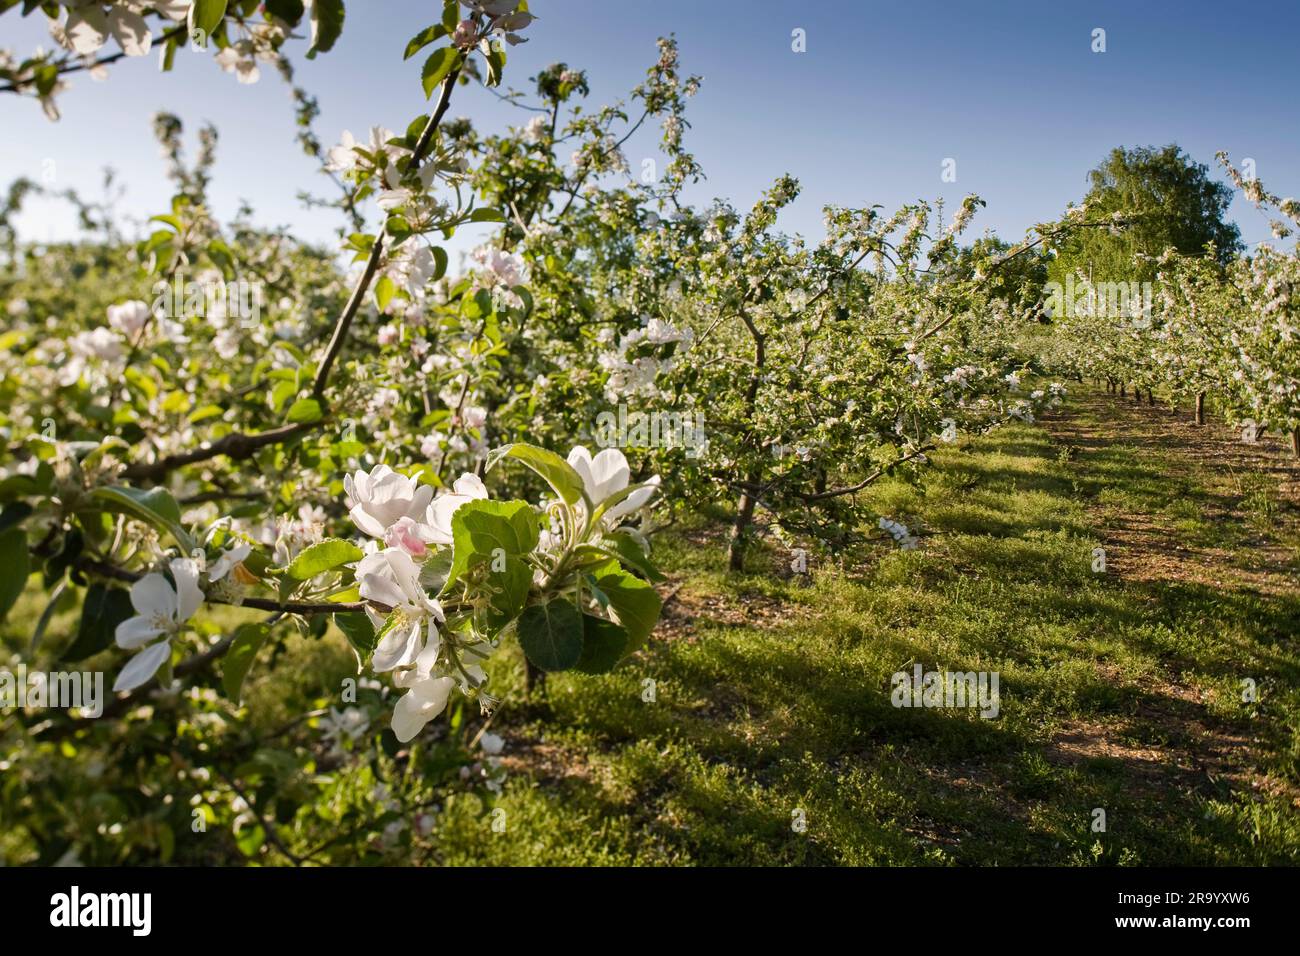 Primo piano dei fiori in fiore sul melo contro il cielo azzurro. Skane, Svezia. Foto Stock